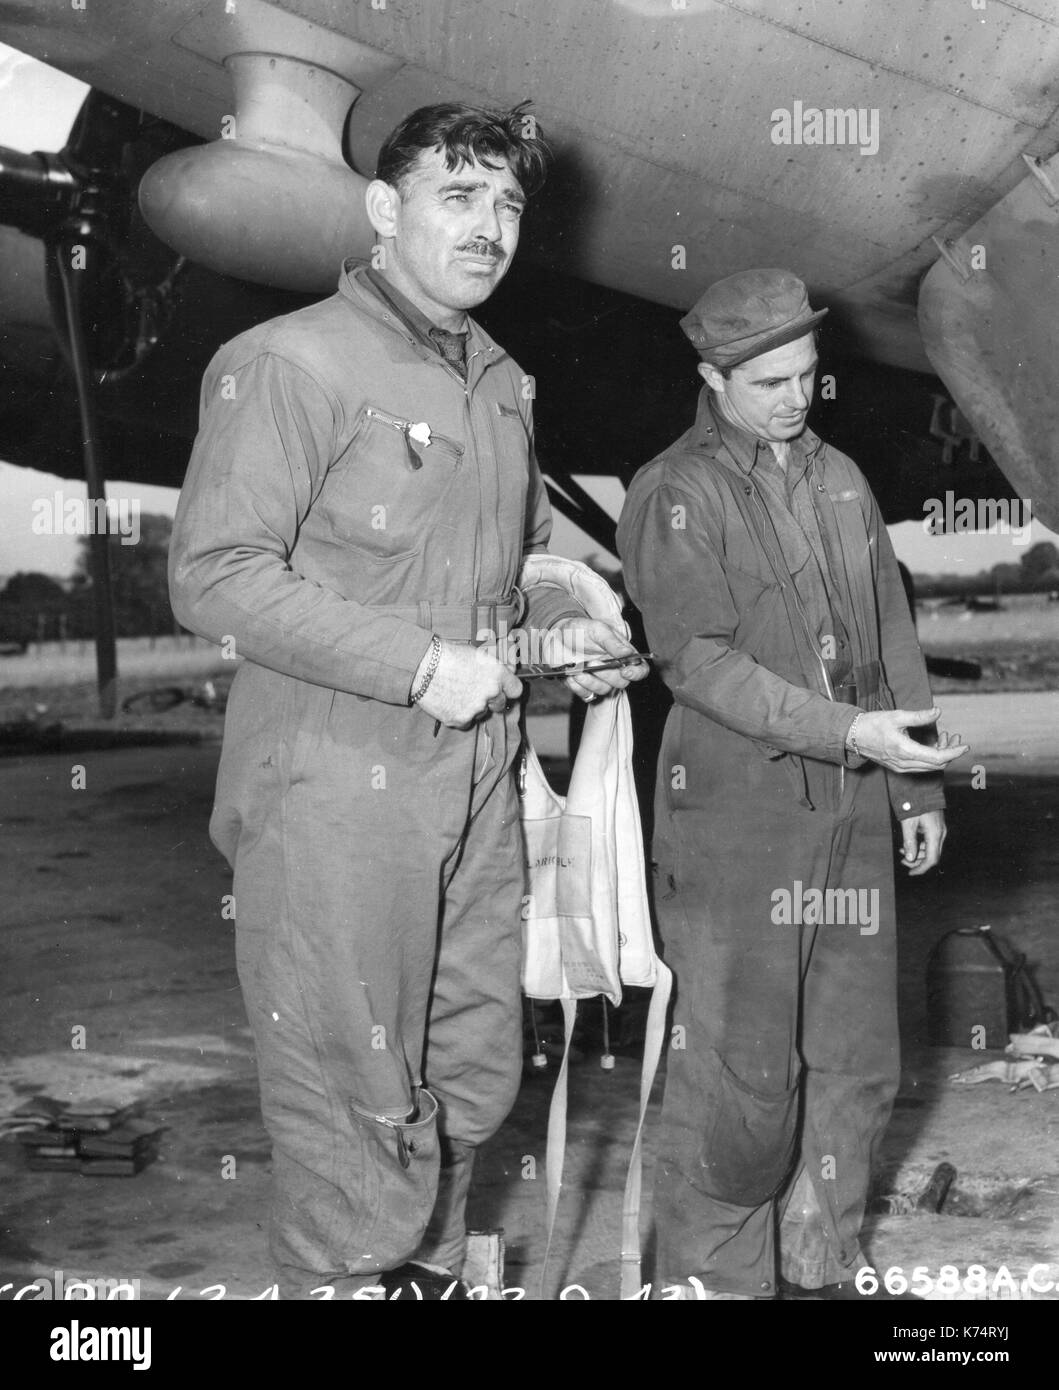 El capitán Clark Gable (izquierda) del 351a Bomb Group, se muestra después de regresar de una misión de bombardeo sobre territorio Nazi, Inglaterra, 09/23/1943 Foto de stock